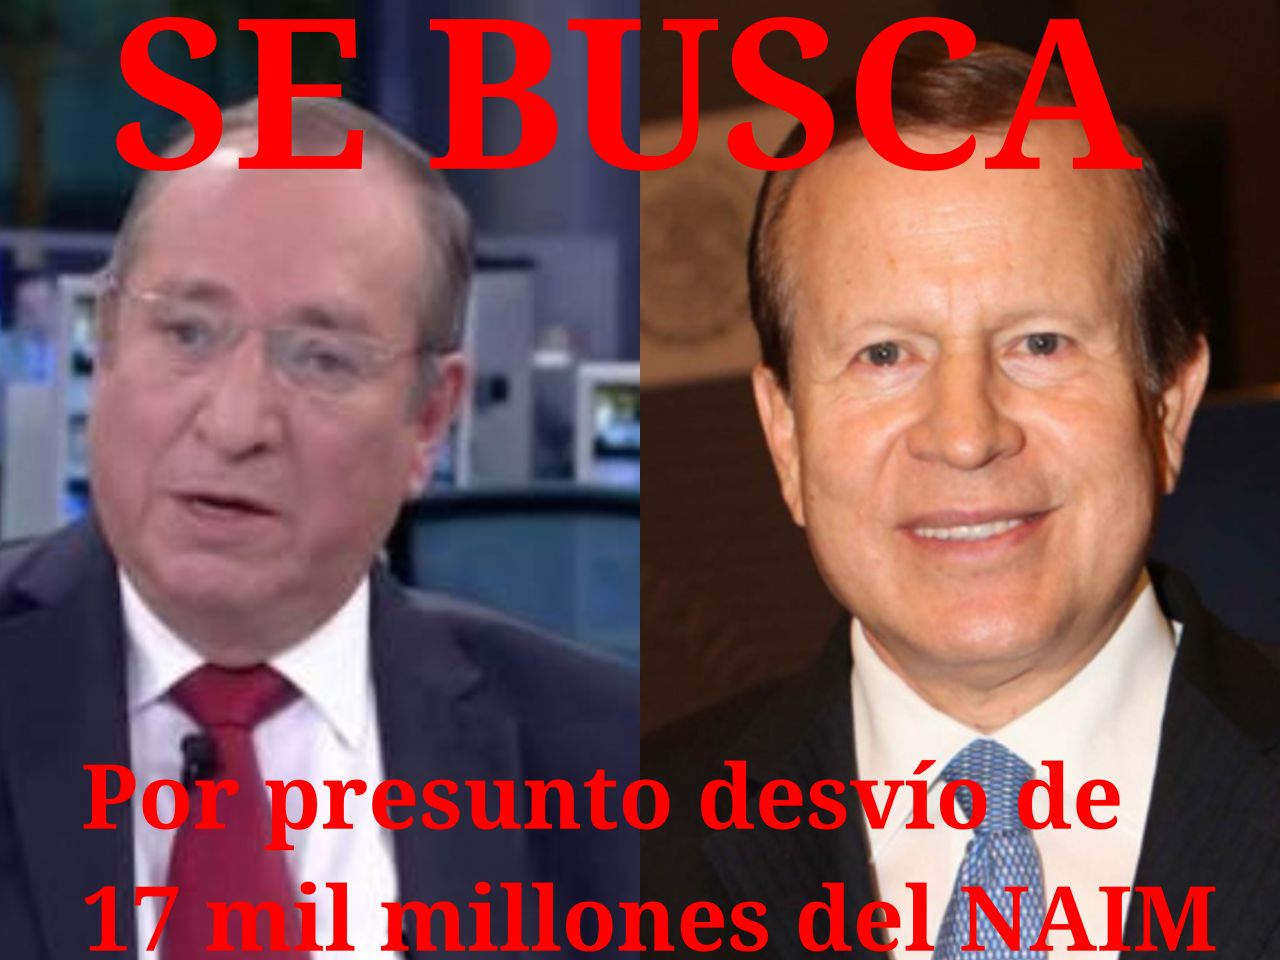 Buscan a González Apaolaza y a Núñez Soto por presunto desvío de 17 mil millones del NAIM